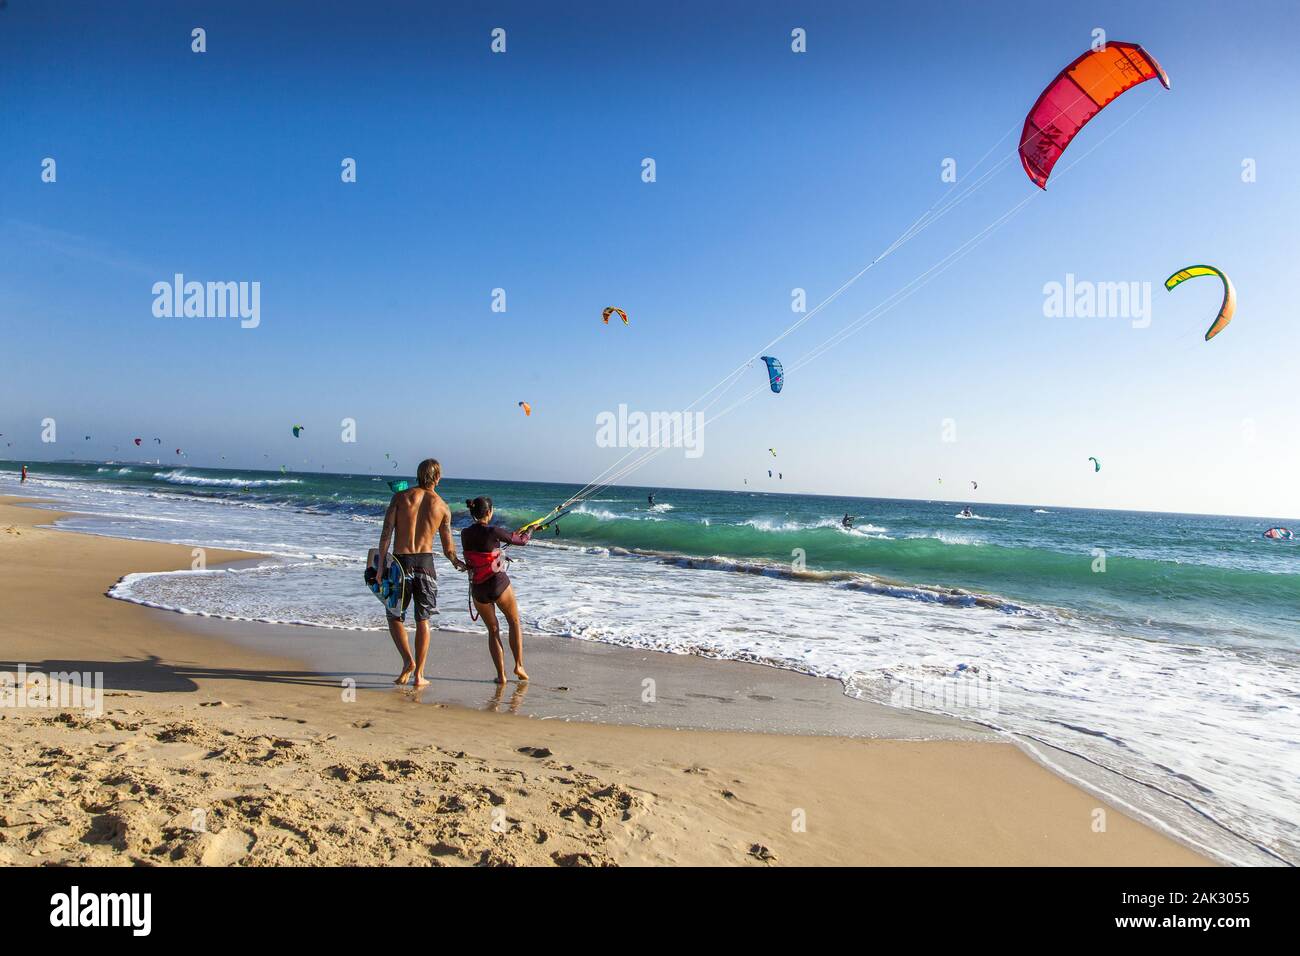 Provinz Cádiz/Tarifa : Kitesurfer an der Playa de los Lances, Andalusien | conditions dans le monde entier Banque D'Images